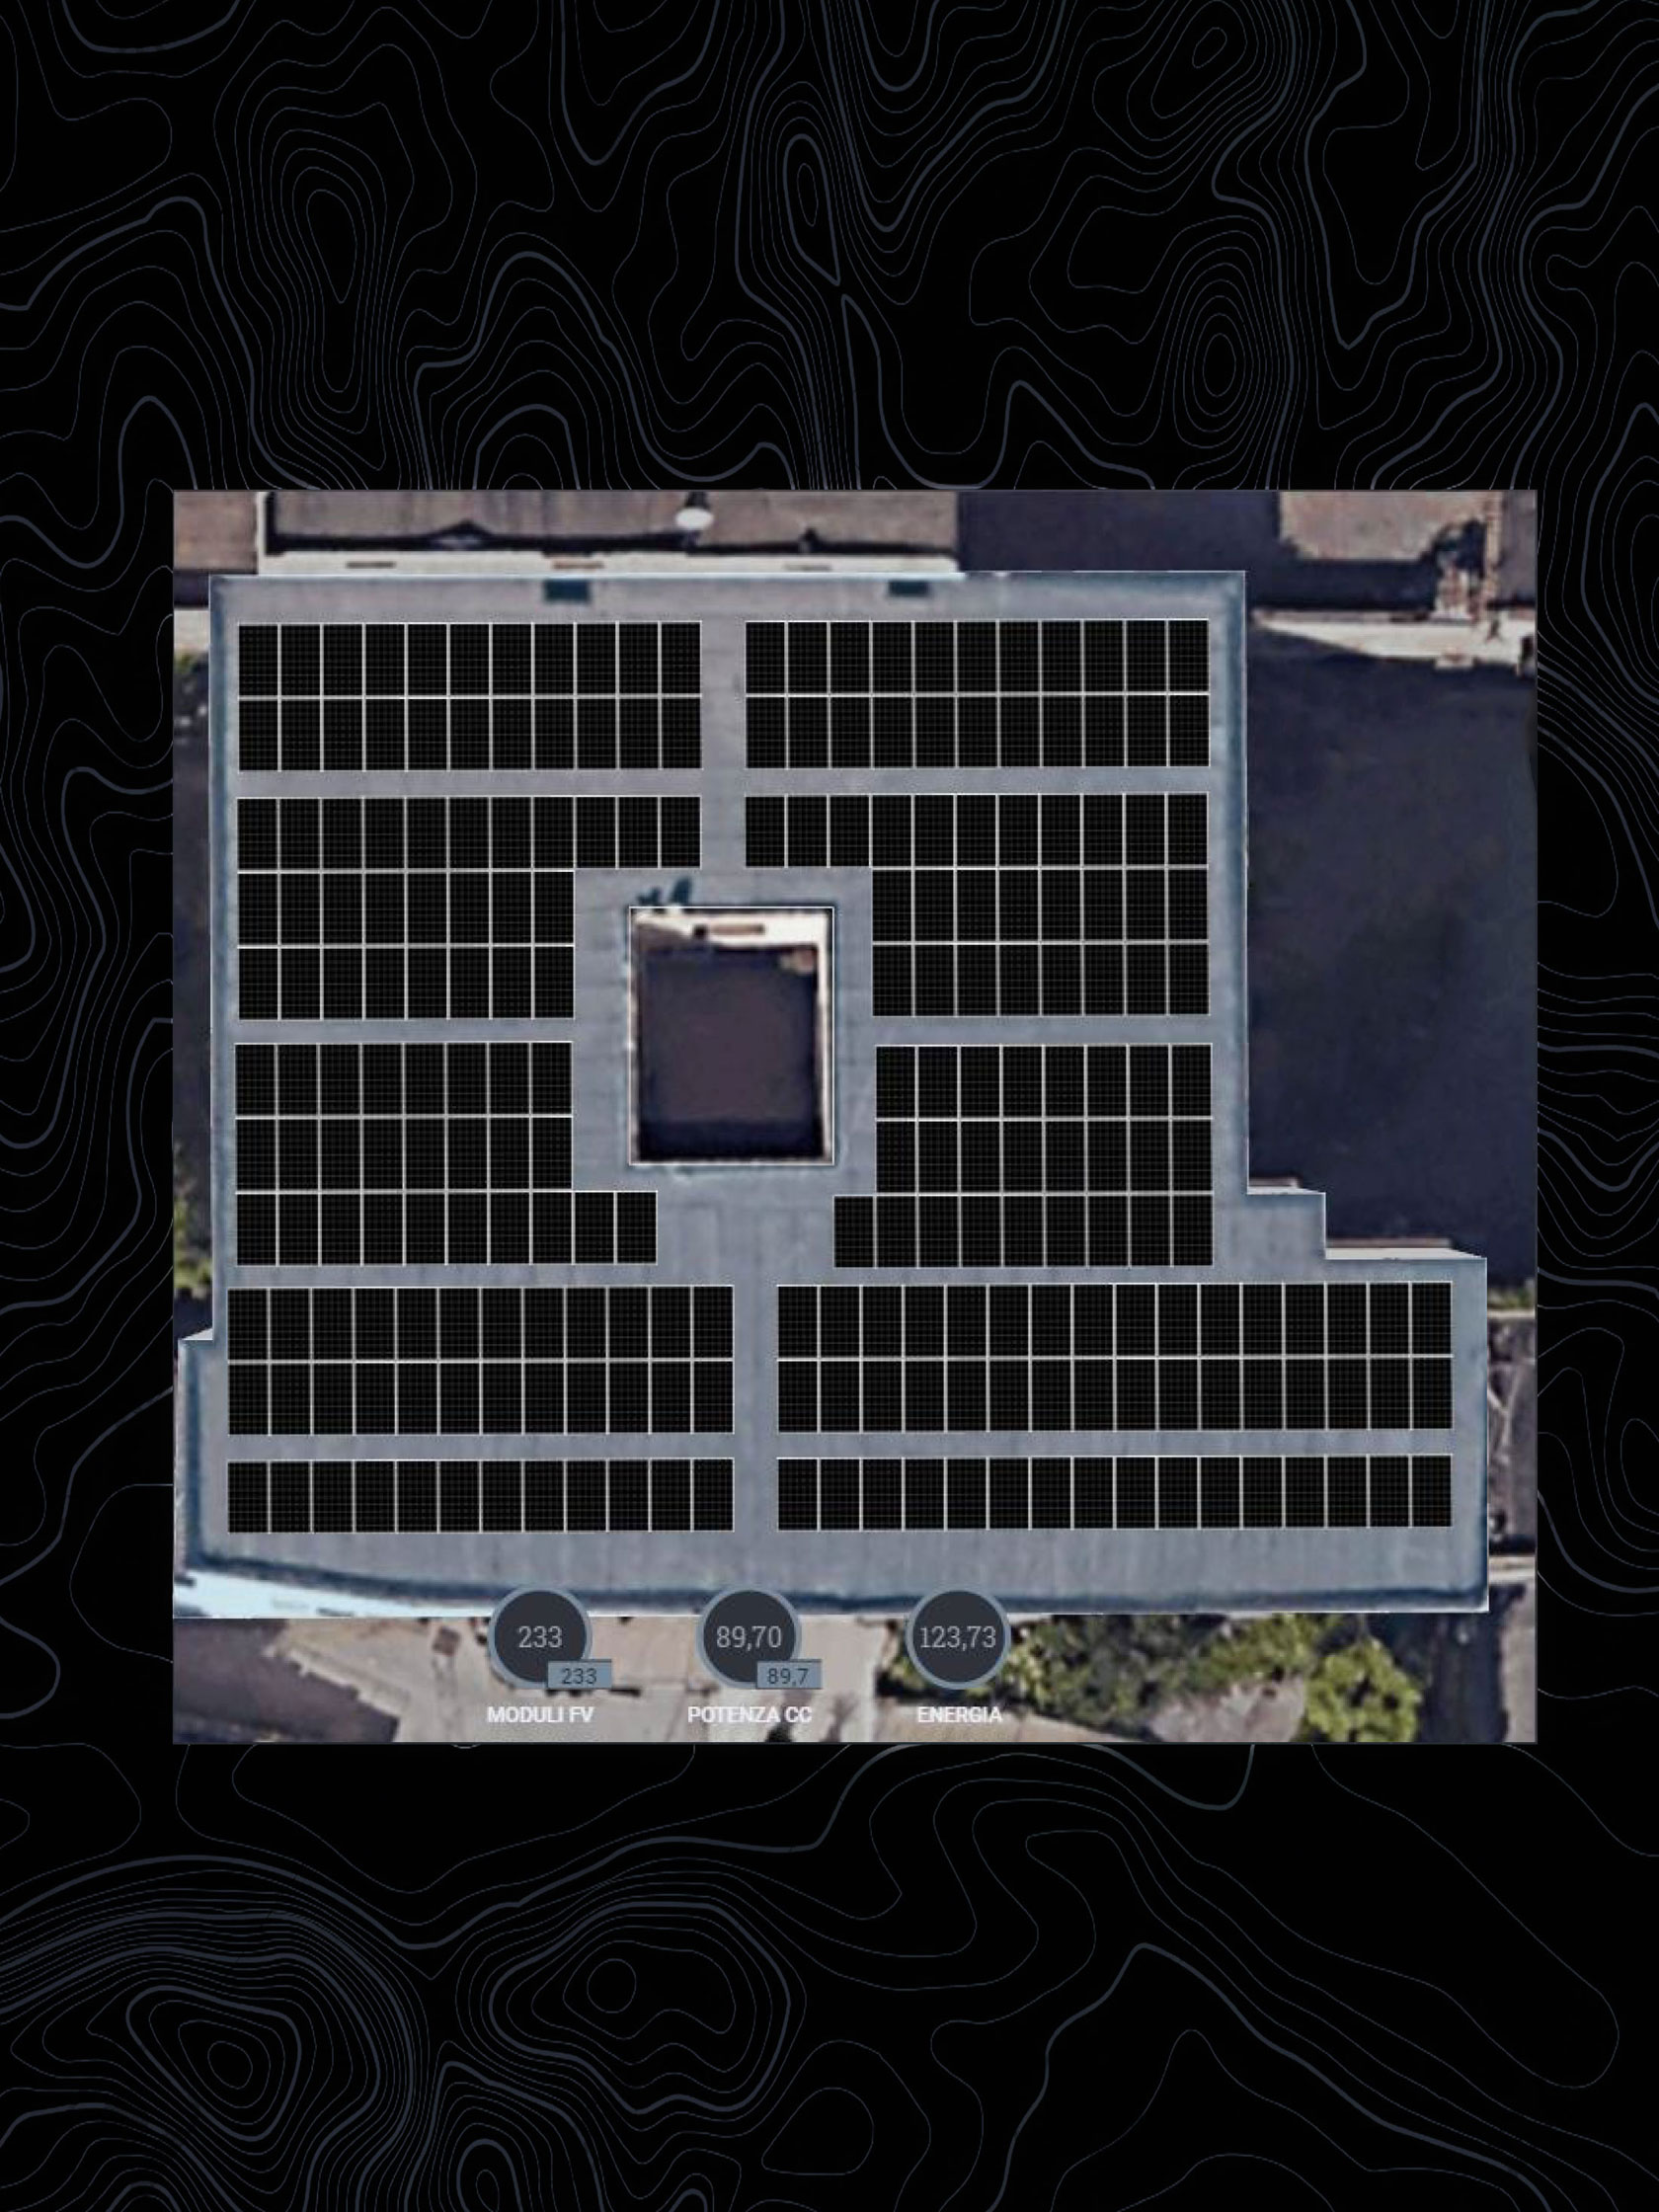 Impianto Fotovoltaico 90 kWp con ottimizzatori ed inverter SolarEdge + 3 batterie Tesla 42 kWh di accumulo installato a Caivano, Napoli dall'azienda DMT Solar installatore certificato Tesla Powerwall e Sunpower Maxeon impianto fotovoltaico in Campania